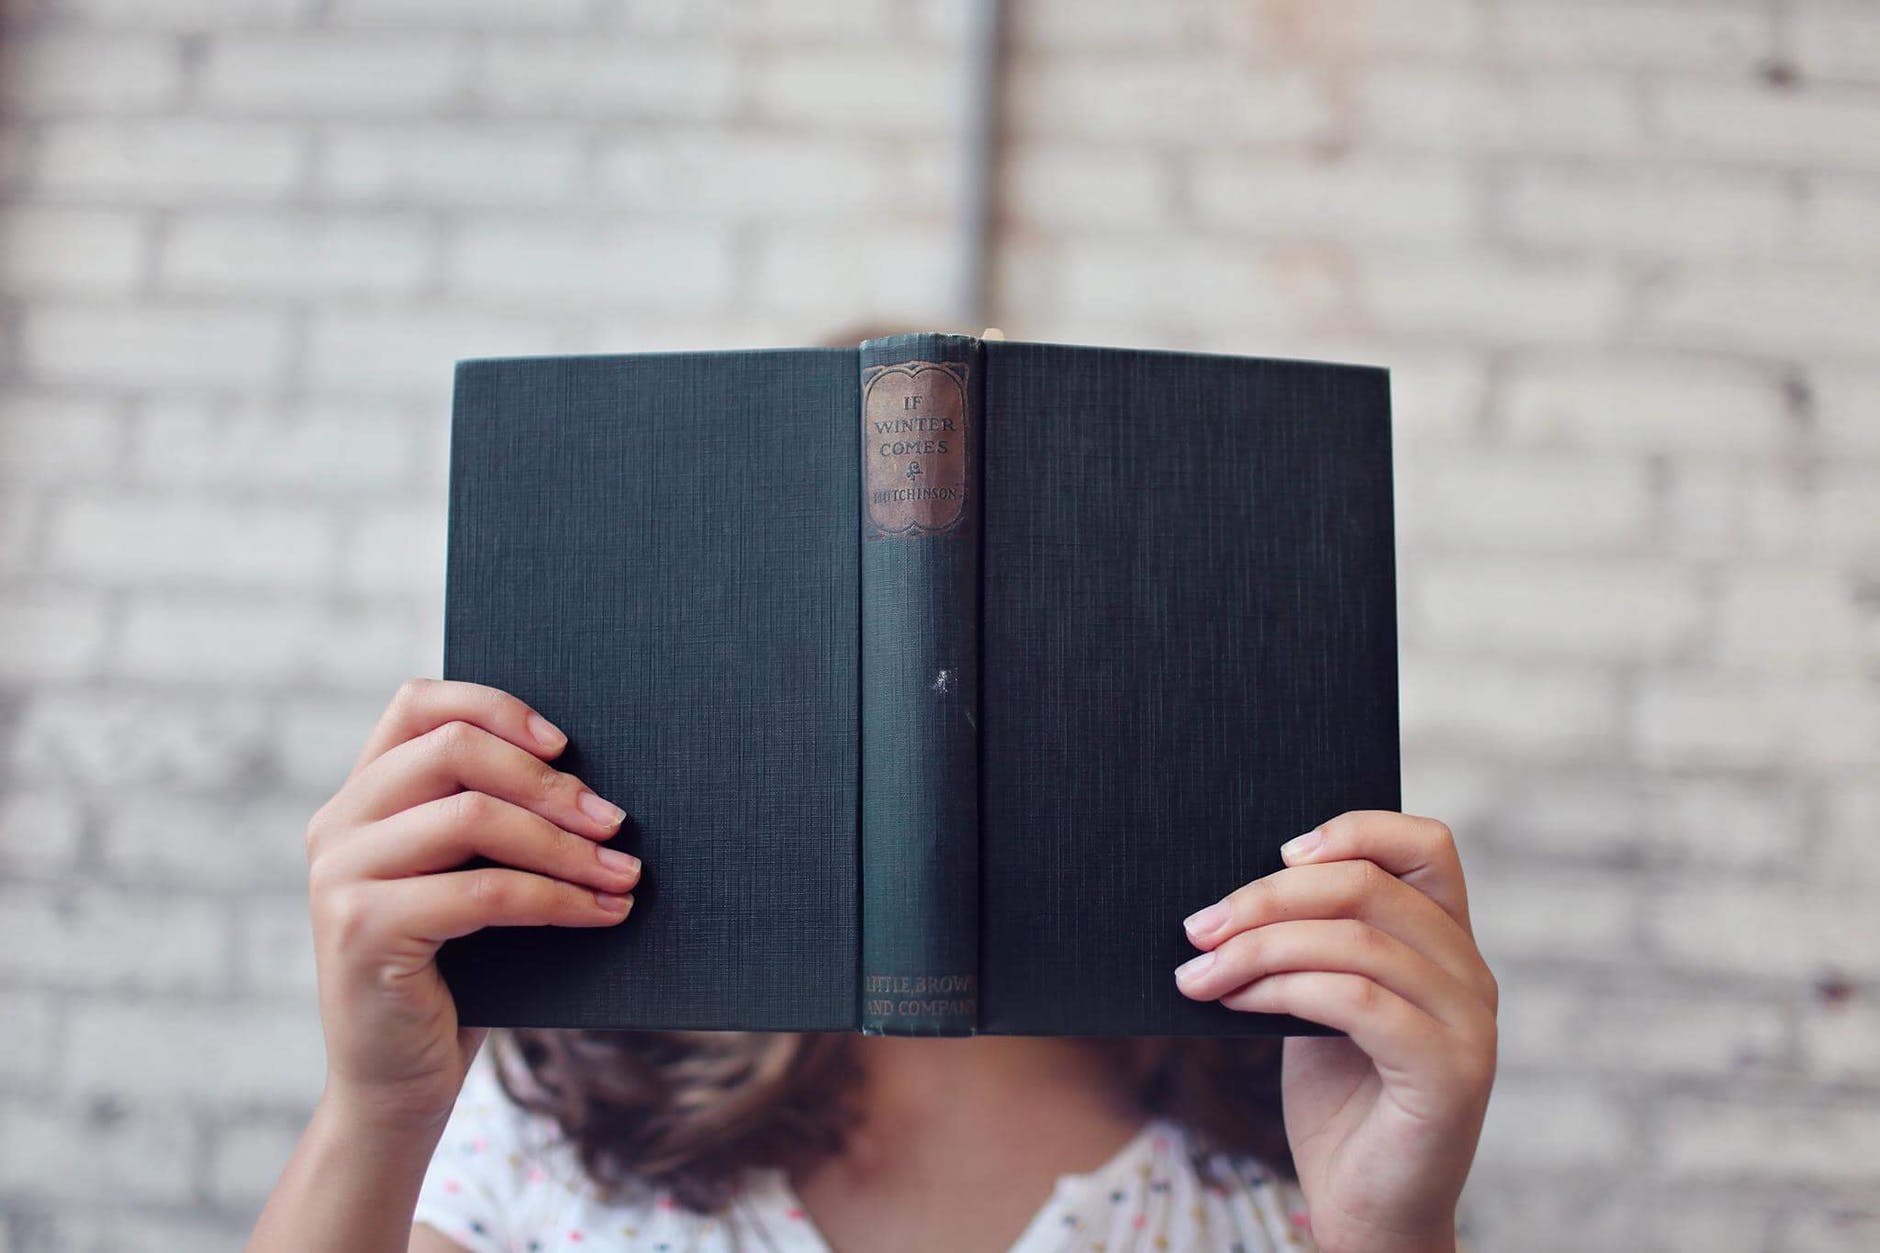 Ler de ponta cabeça ajuda a melhorar a qualidade e o foco da leitura